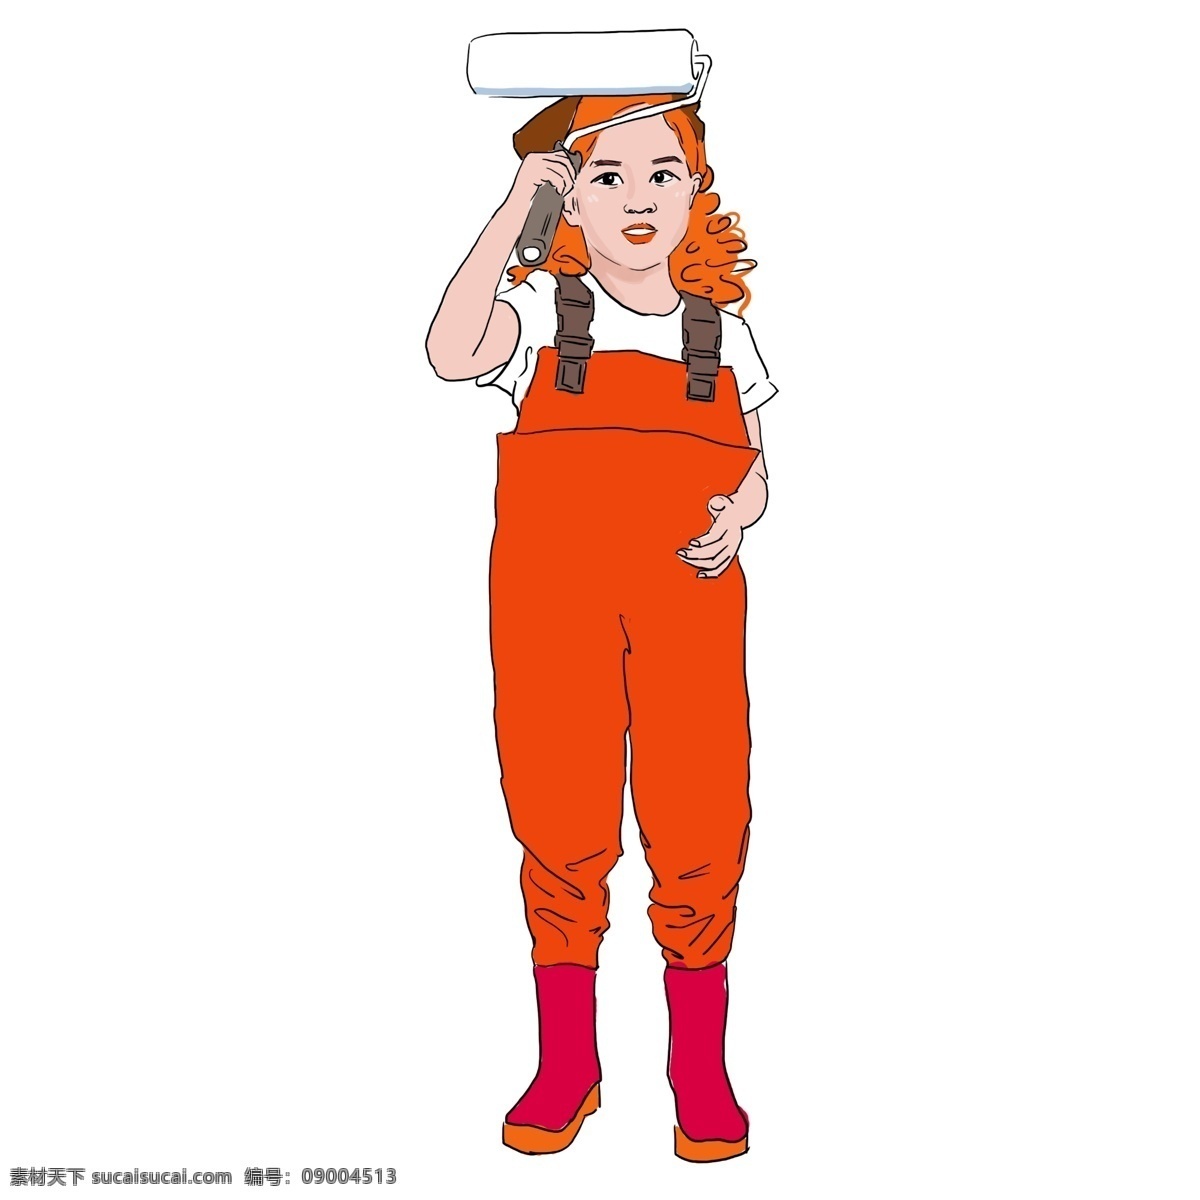 橘 色 欧美 风 粉刷 工人 家装节 黄色 橘色 装修 家具 工作 卡通 手绘 正能量 努力 装饰 可爱 快乐 女性